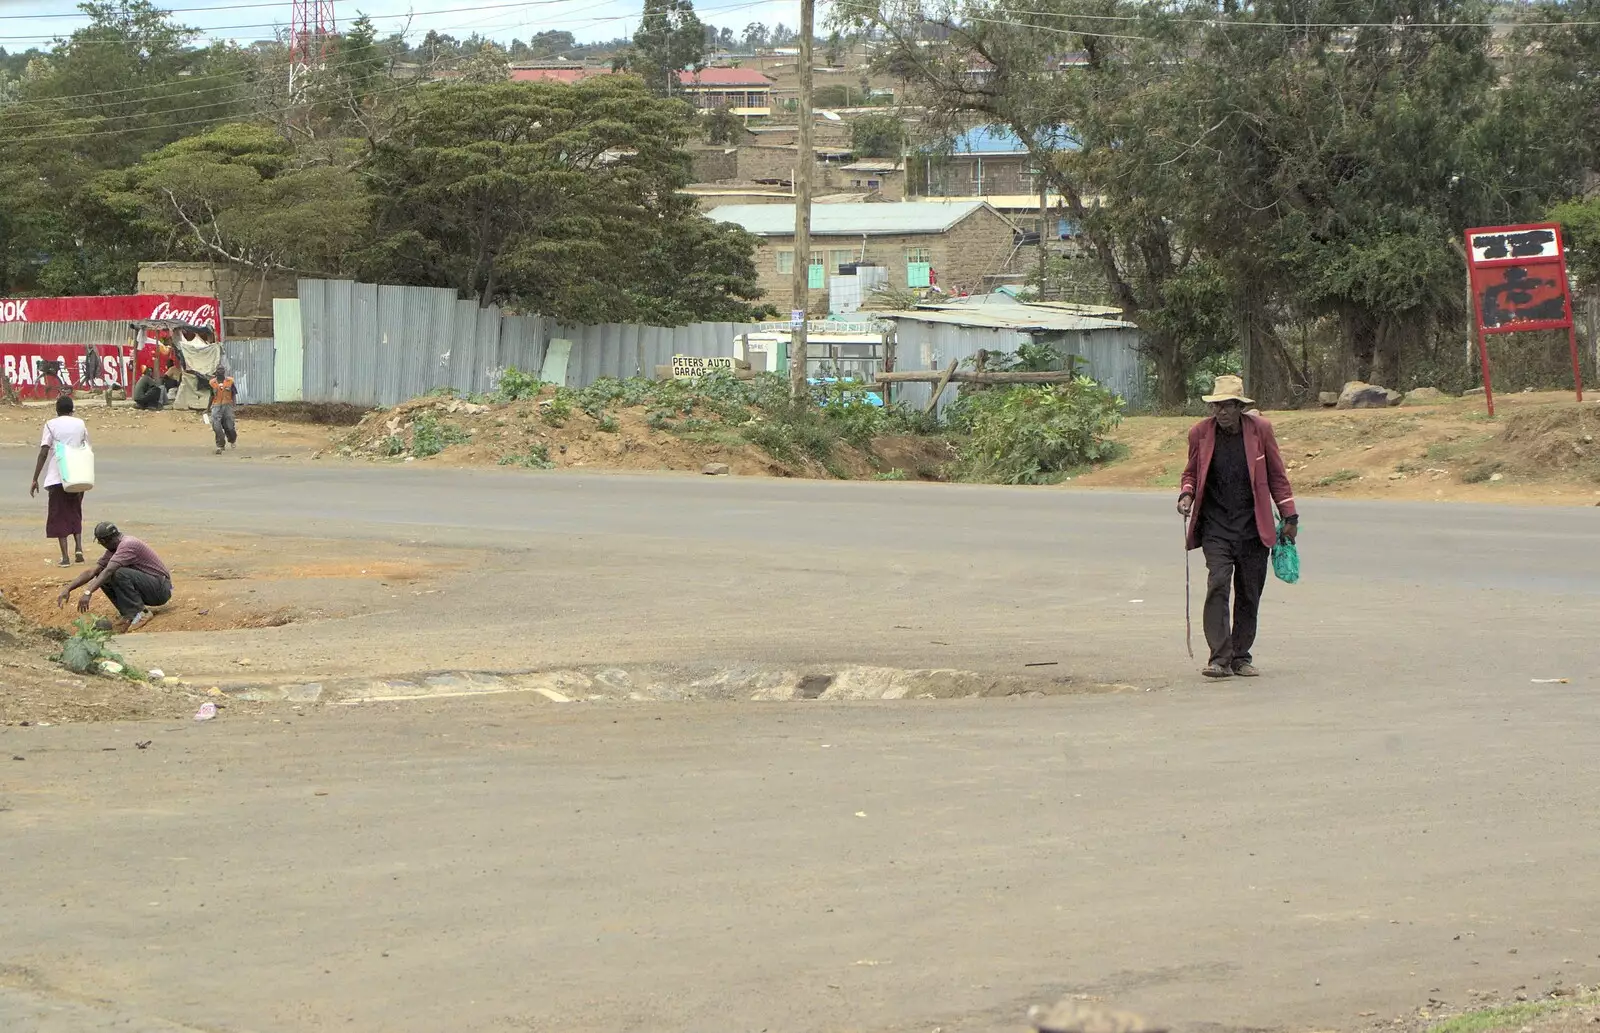 An old dude walks around, from Nairobi and the Road to Maasai Mara, Kenya, Africa - 1st November 2010